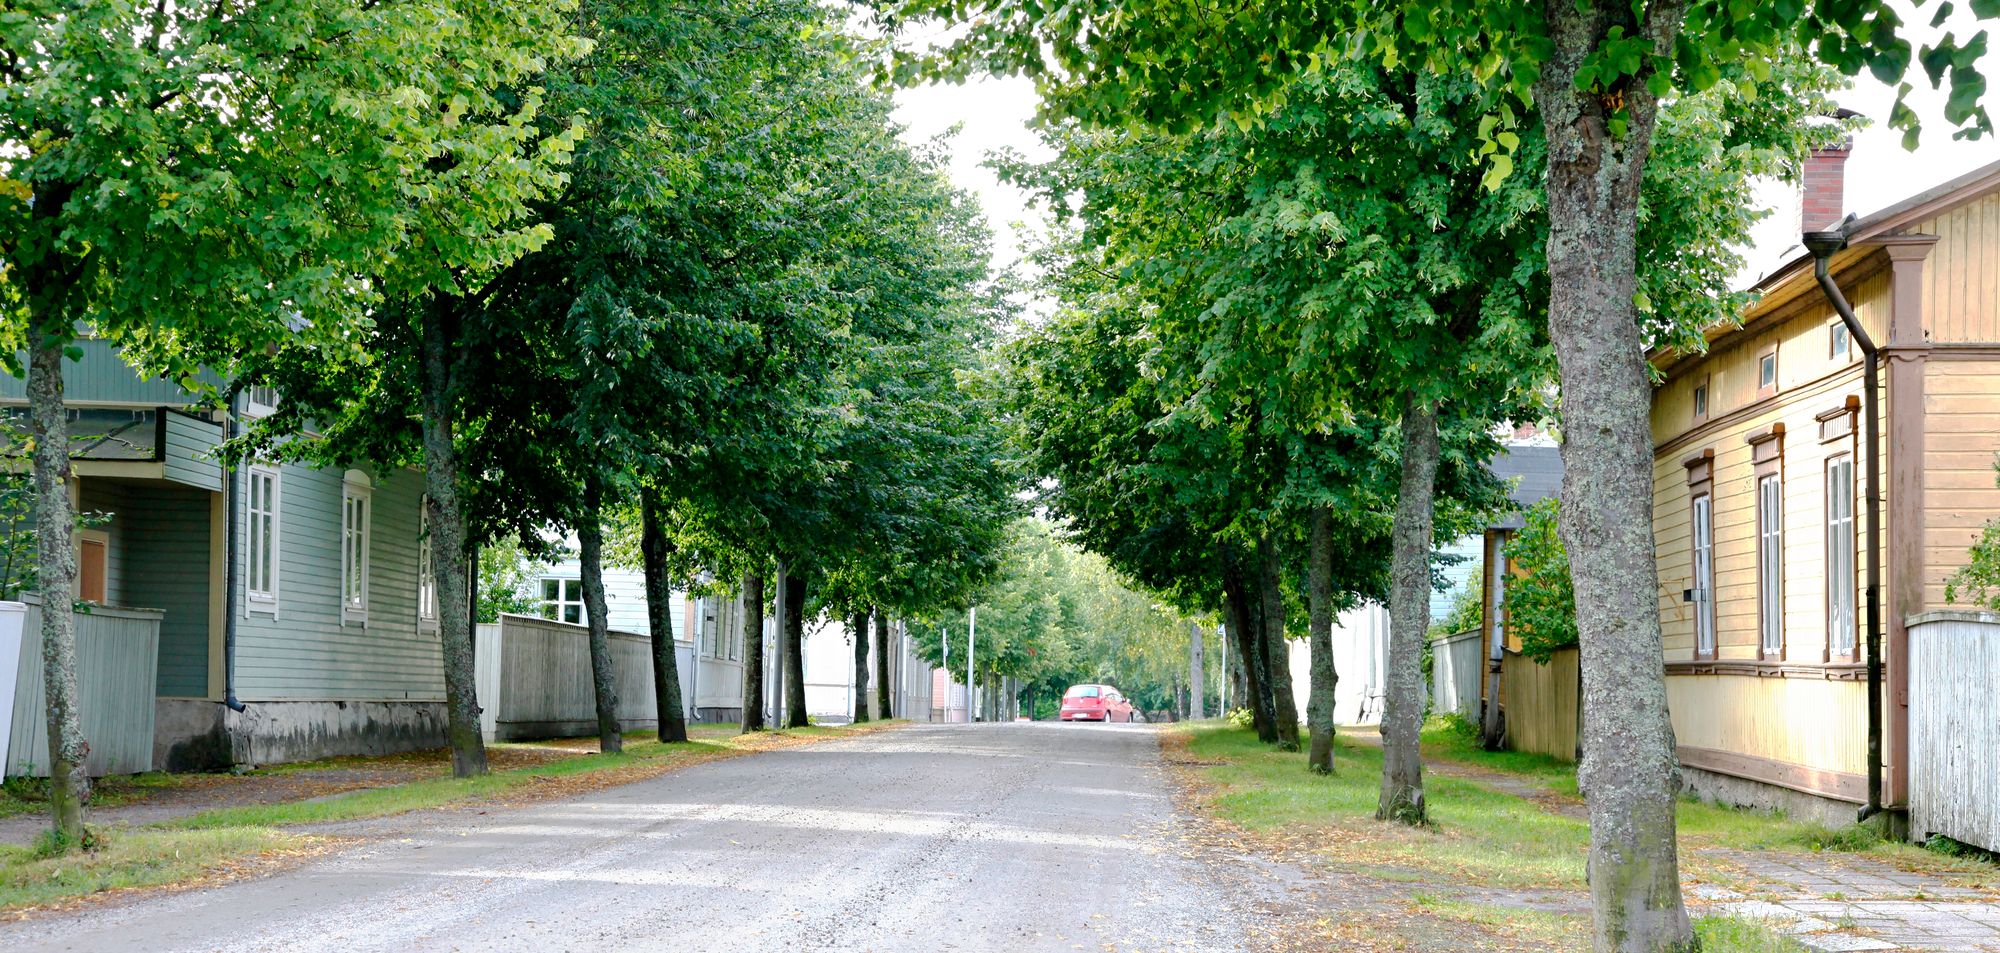  Uudessakaupungissa on paloturvallisuuden takia leveät ja samalla komeat kadut. Kuva:  Hannu Rinne